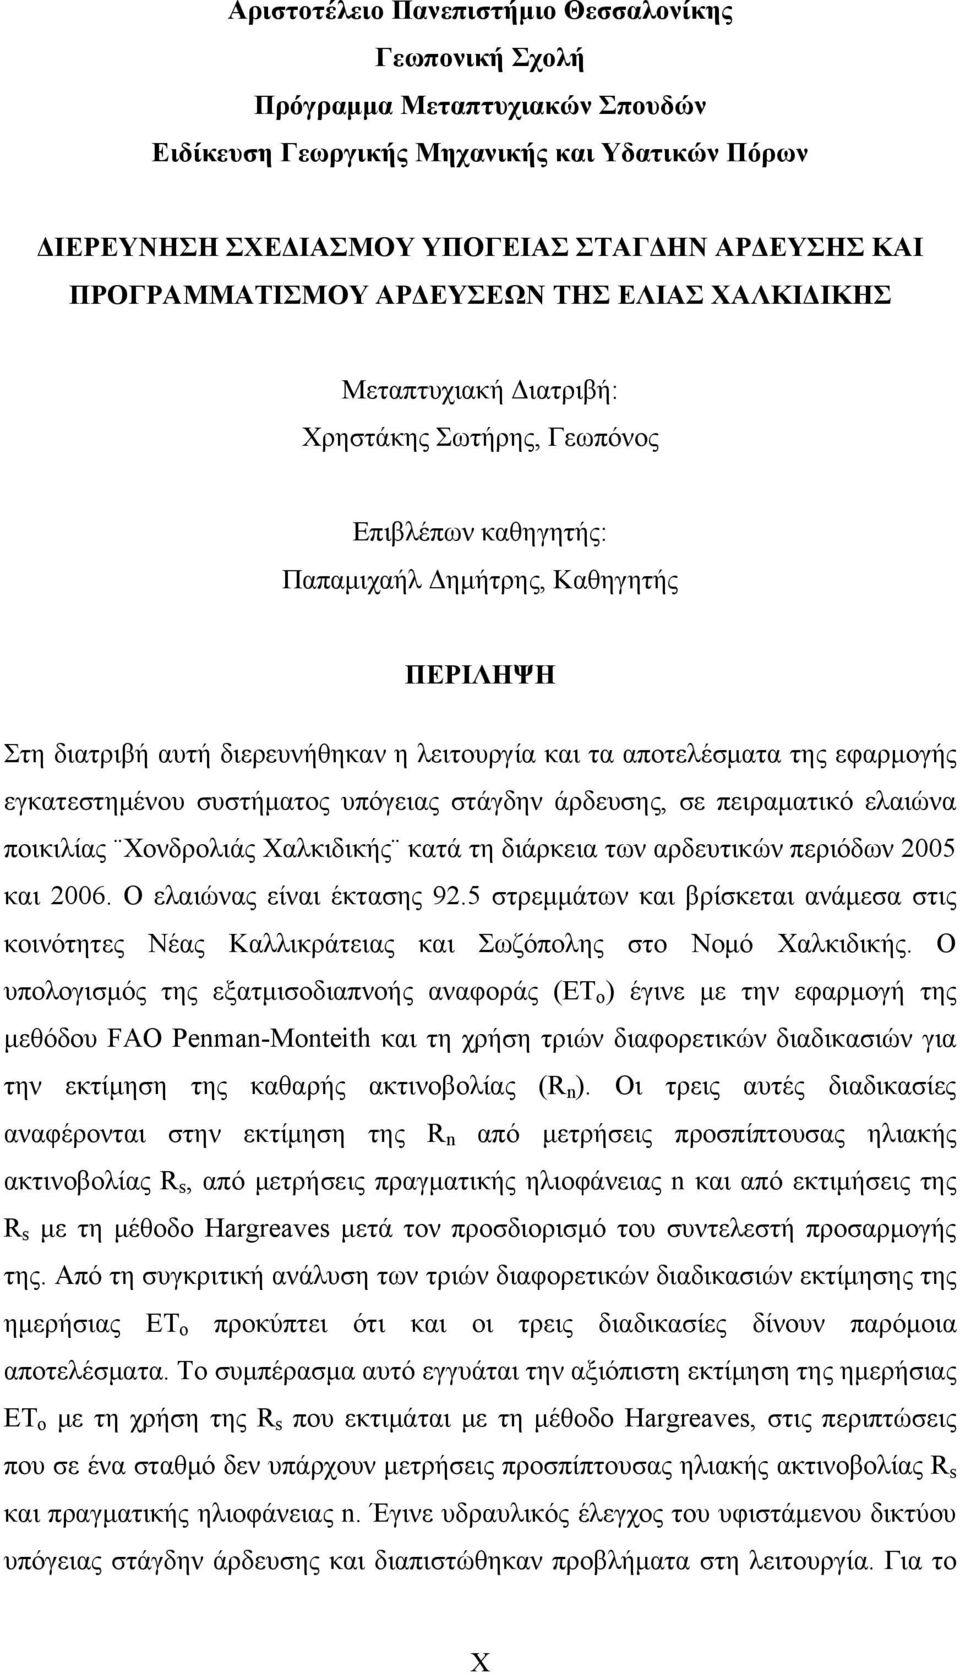 λειτουργία και τα αποτελέσματα της εφαρμογής εγκατεστημένου συστήματος υπόγειας στάγδην άρδευσης, σε πειραματικό ελαιώνα ποικιλίας Χονδρολιάς Χαλκιδικής κατά τη διάρκεια των αρδευτικών περιόδων 2005